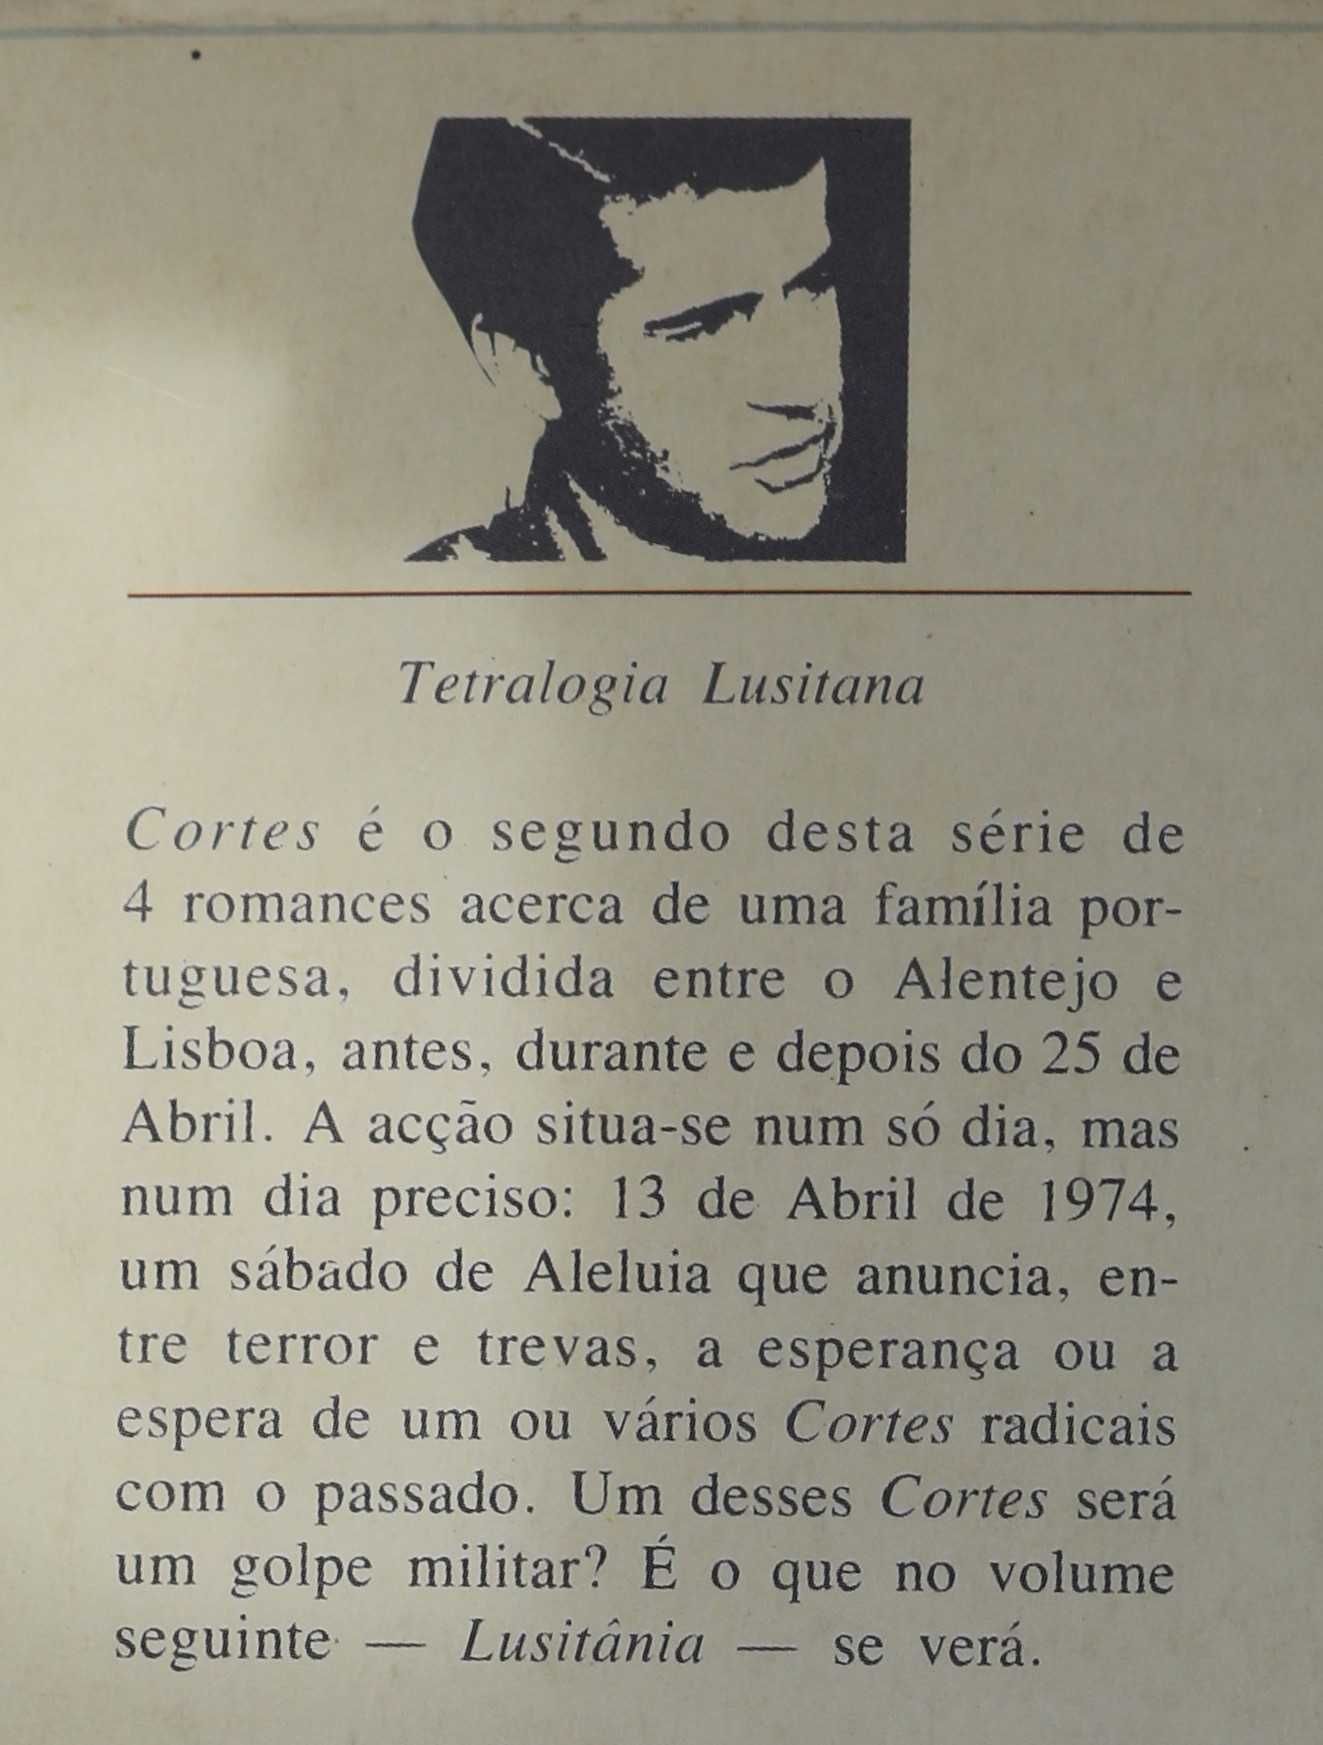 Almeida Faria - «A Paixão»  e «Cortes»